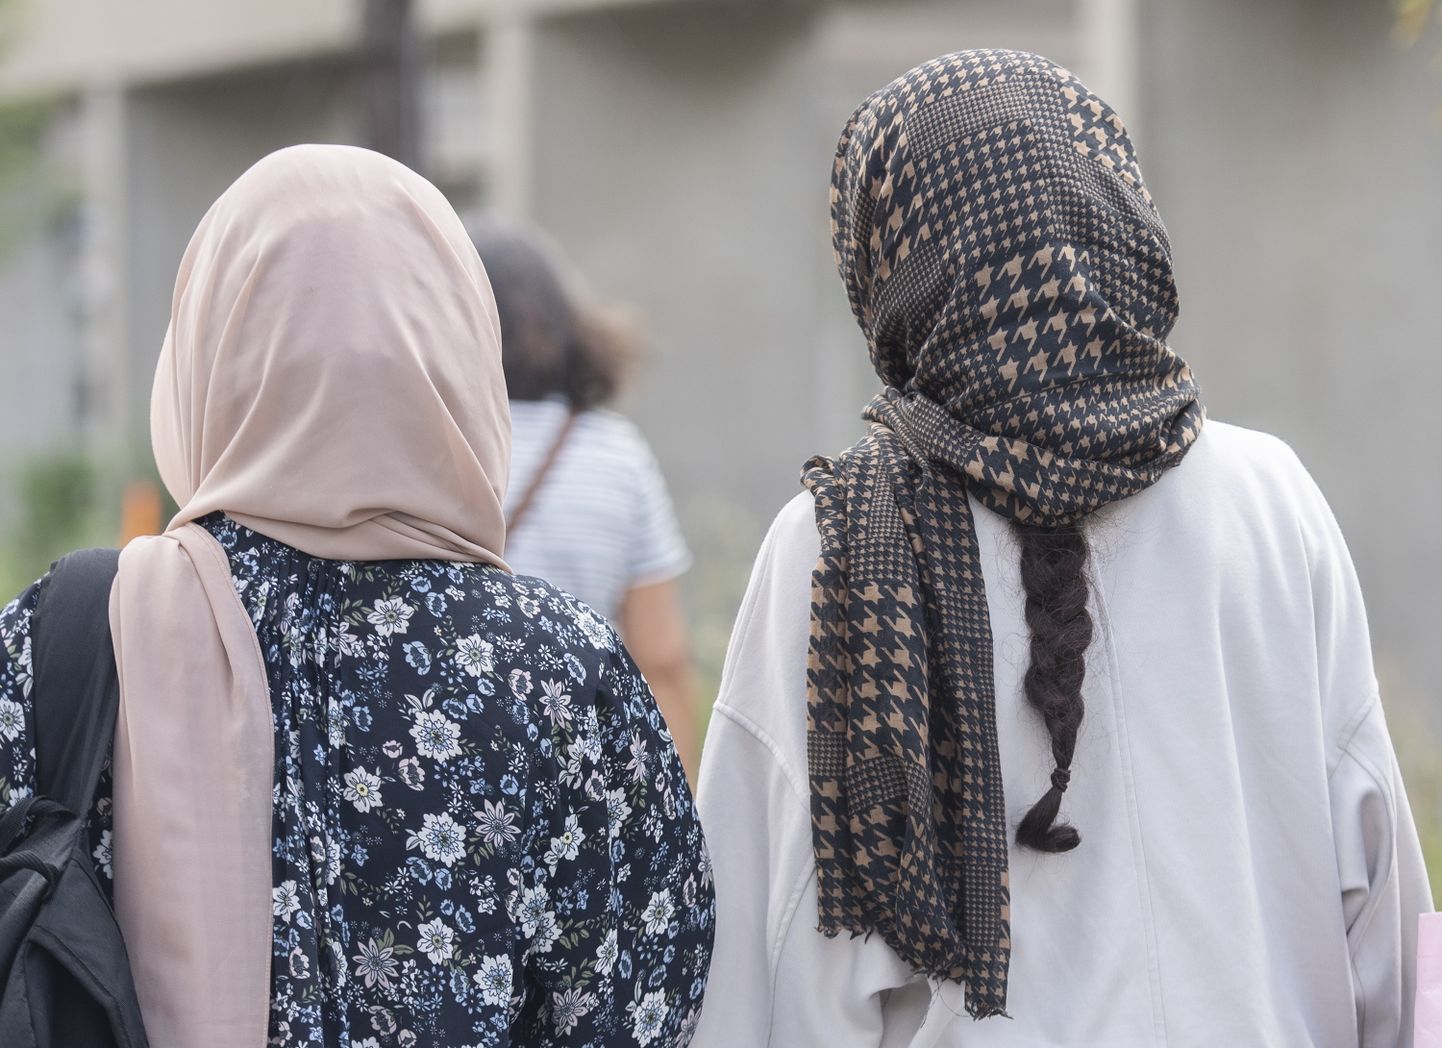 Pearätti kandvad mosleminaised. Foto on illustratiivne.